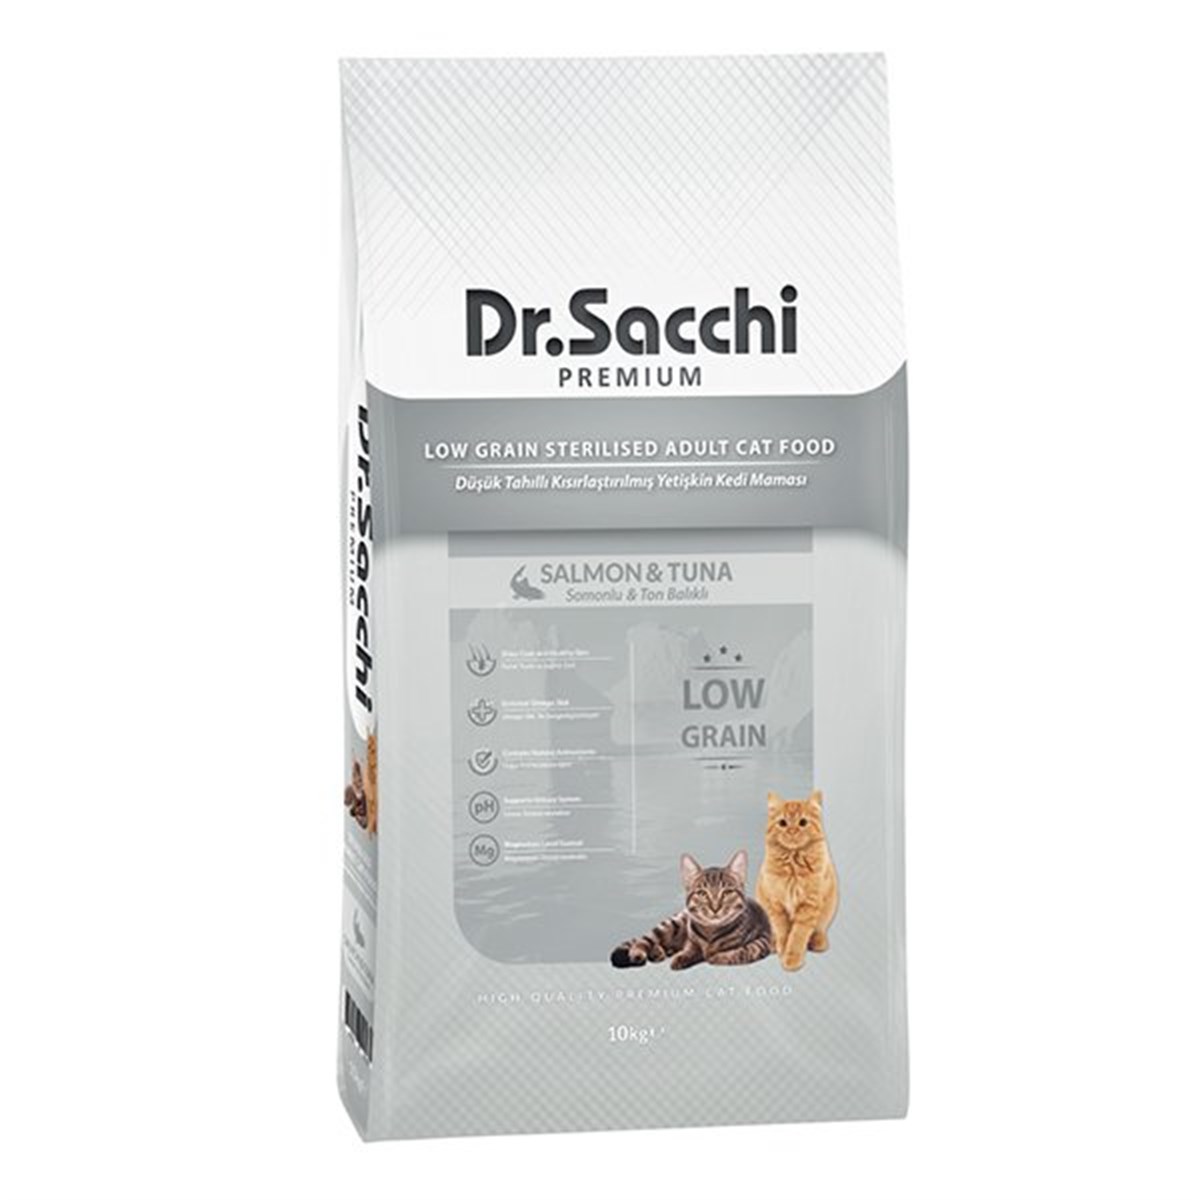 Dr.Sacchi Premium Düşük Tahıllı Somonlu ve Ton Balıklı Kısırlaştırılmış  Kedi Maması 10 Kg, Alışverişin Adresi'nde | Shopiglo